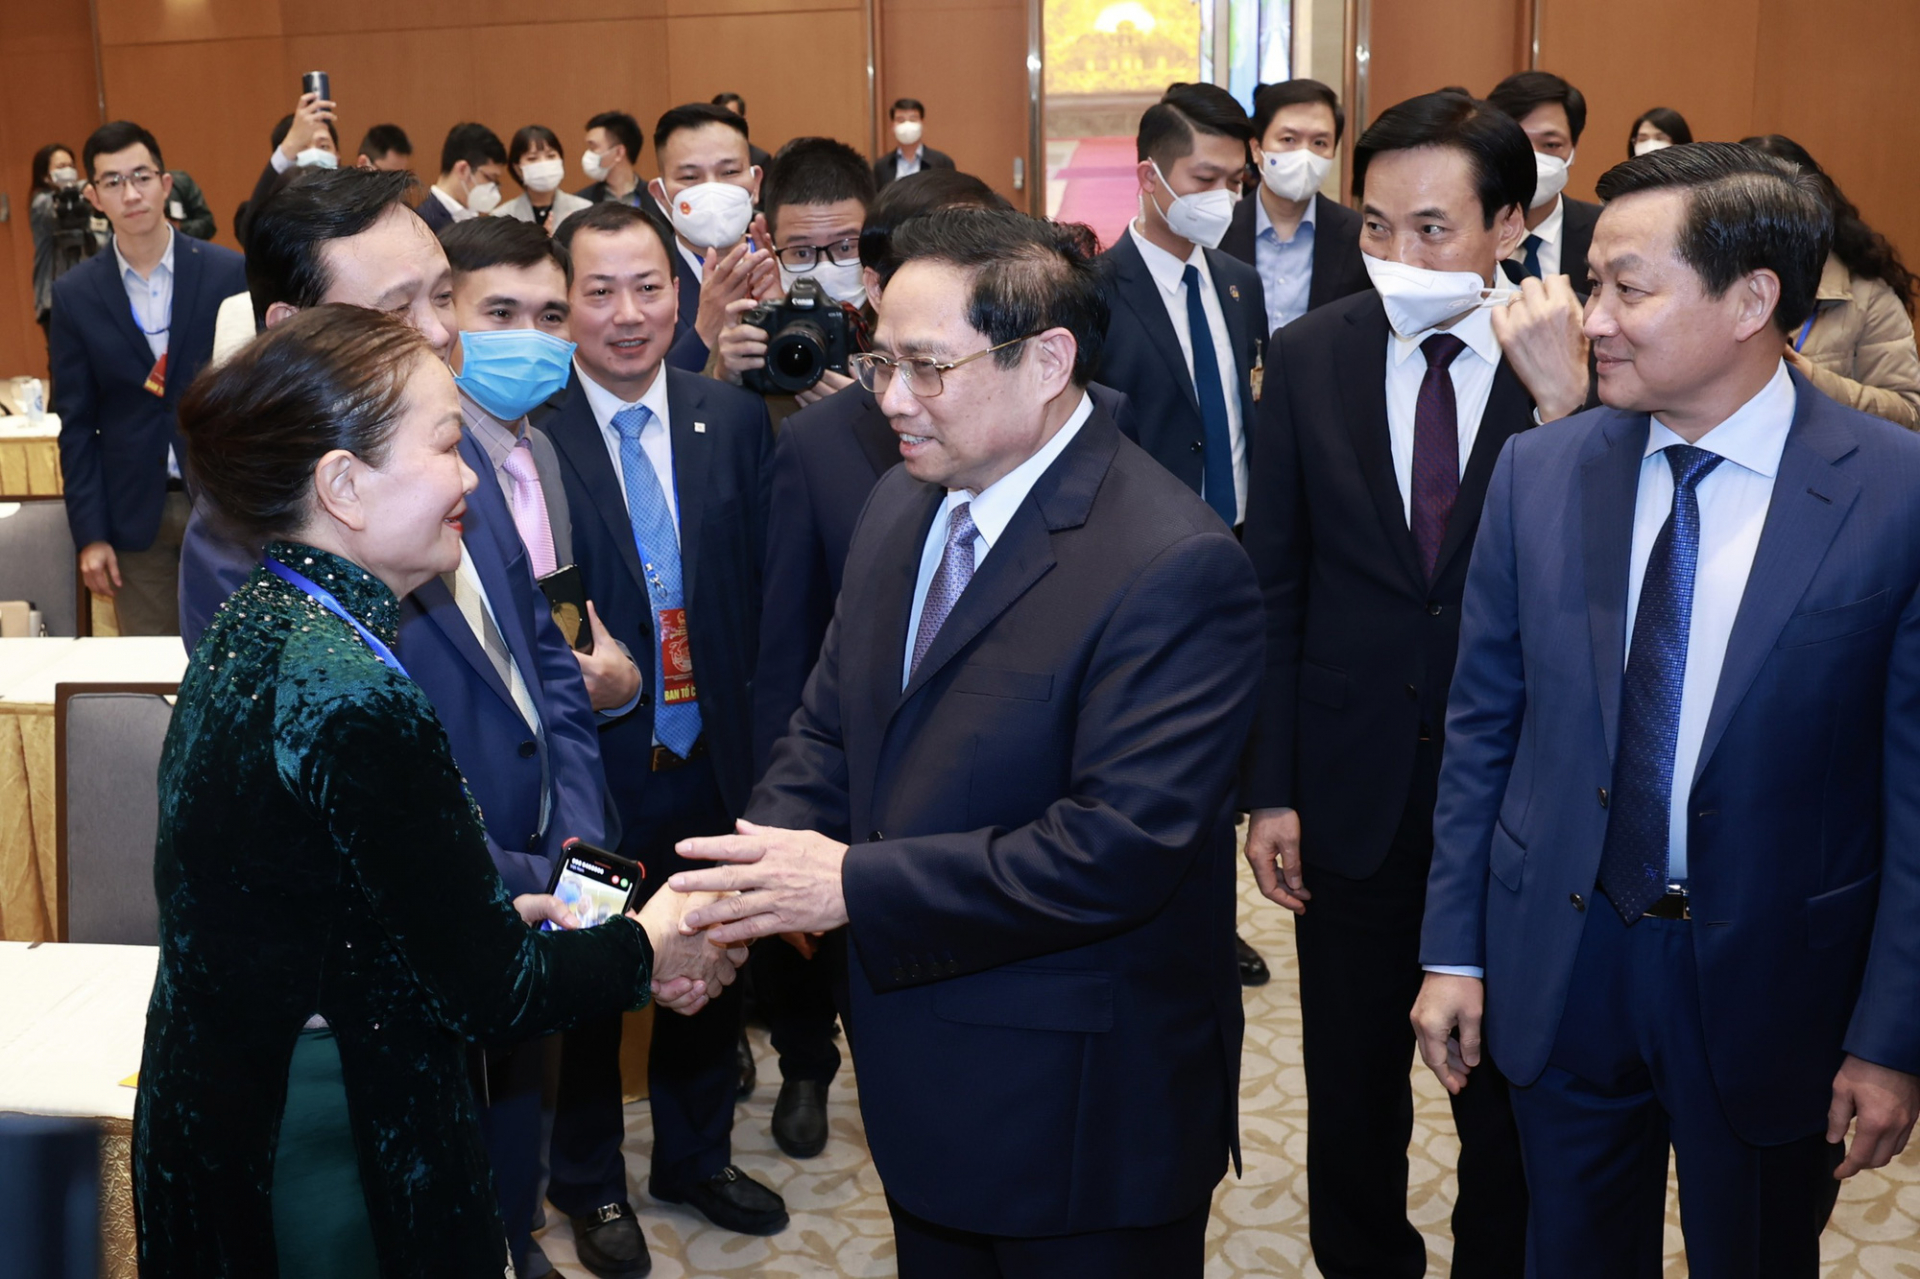 Thủ tướng thăm hói, chúc mừng bà con Việt kiều về dự chương trình Xuân Quê hương 2022